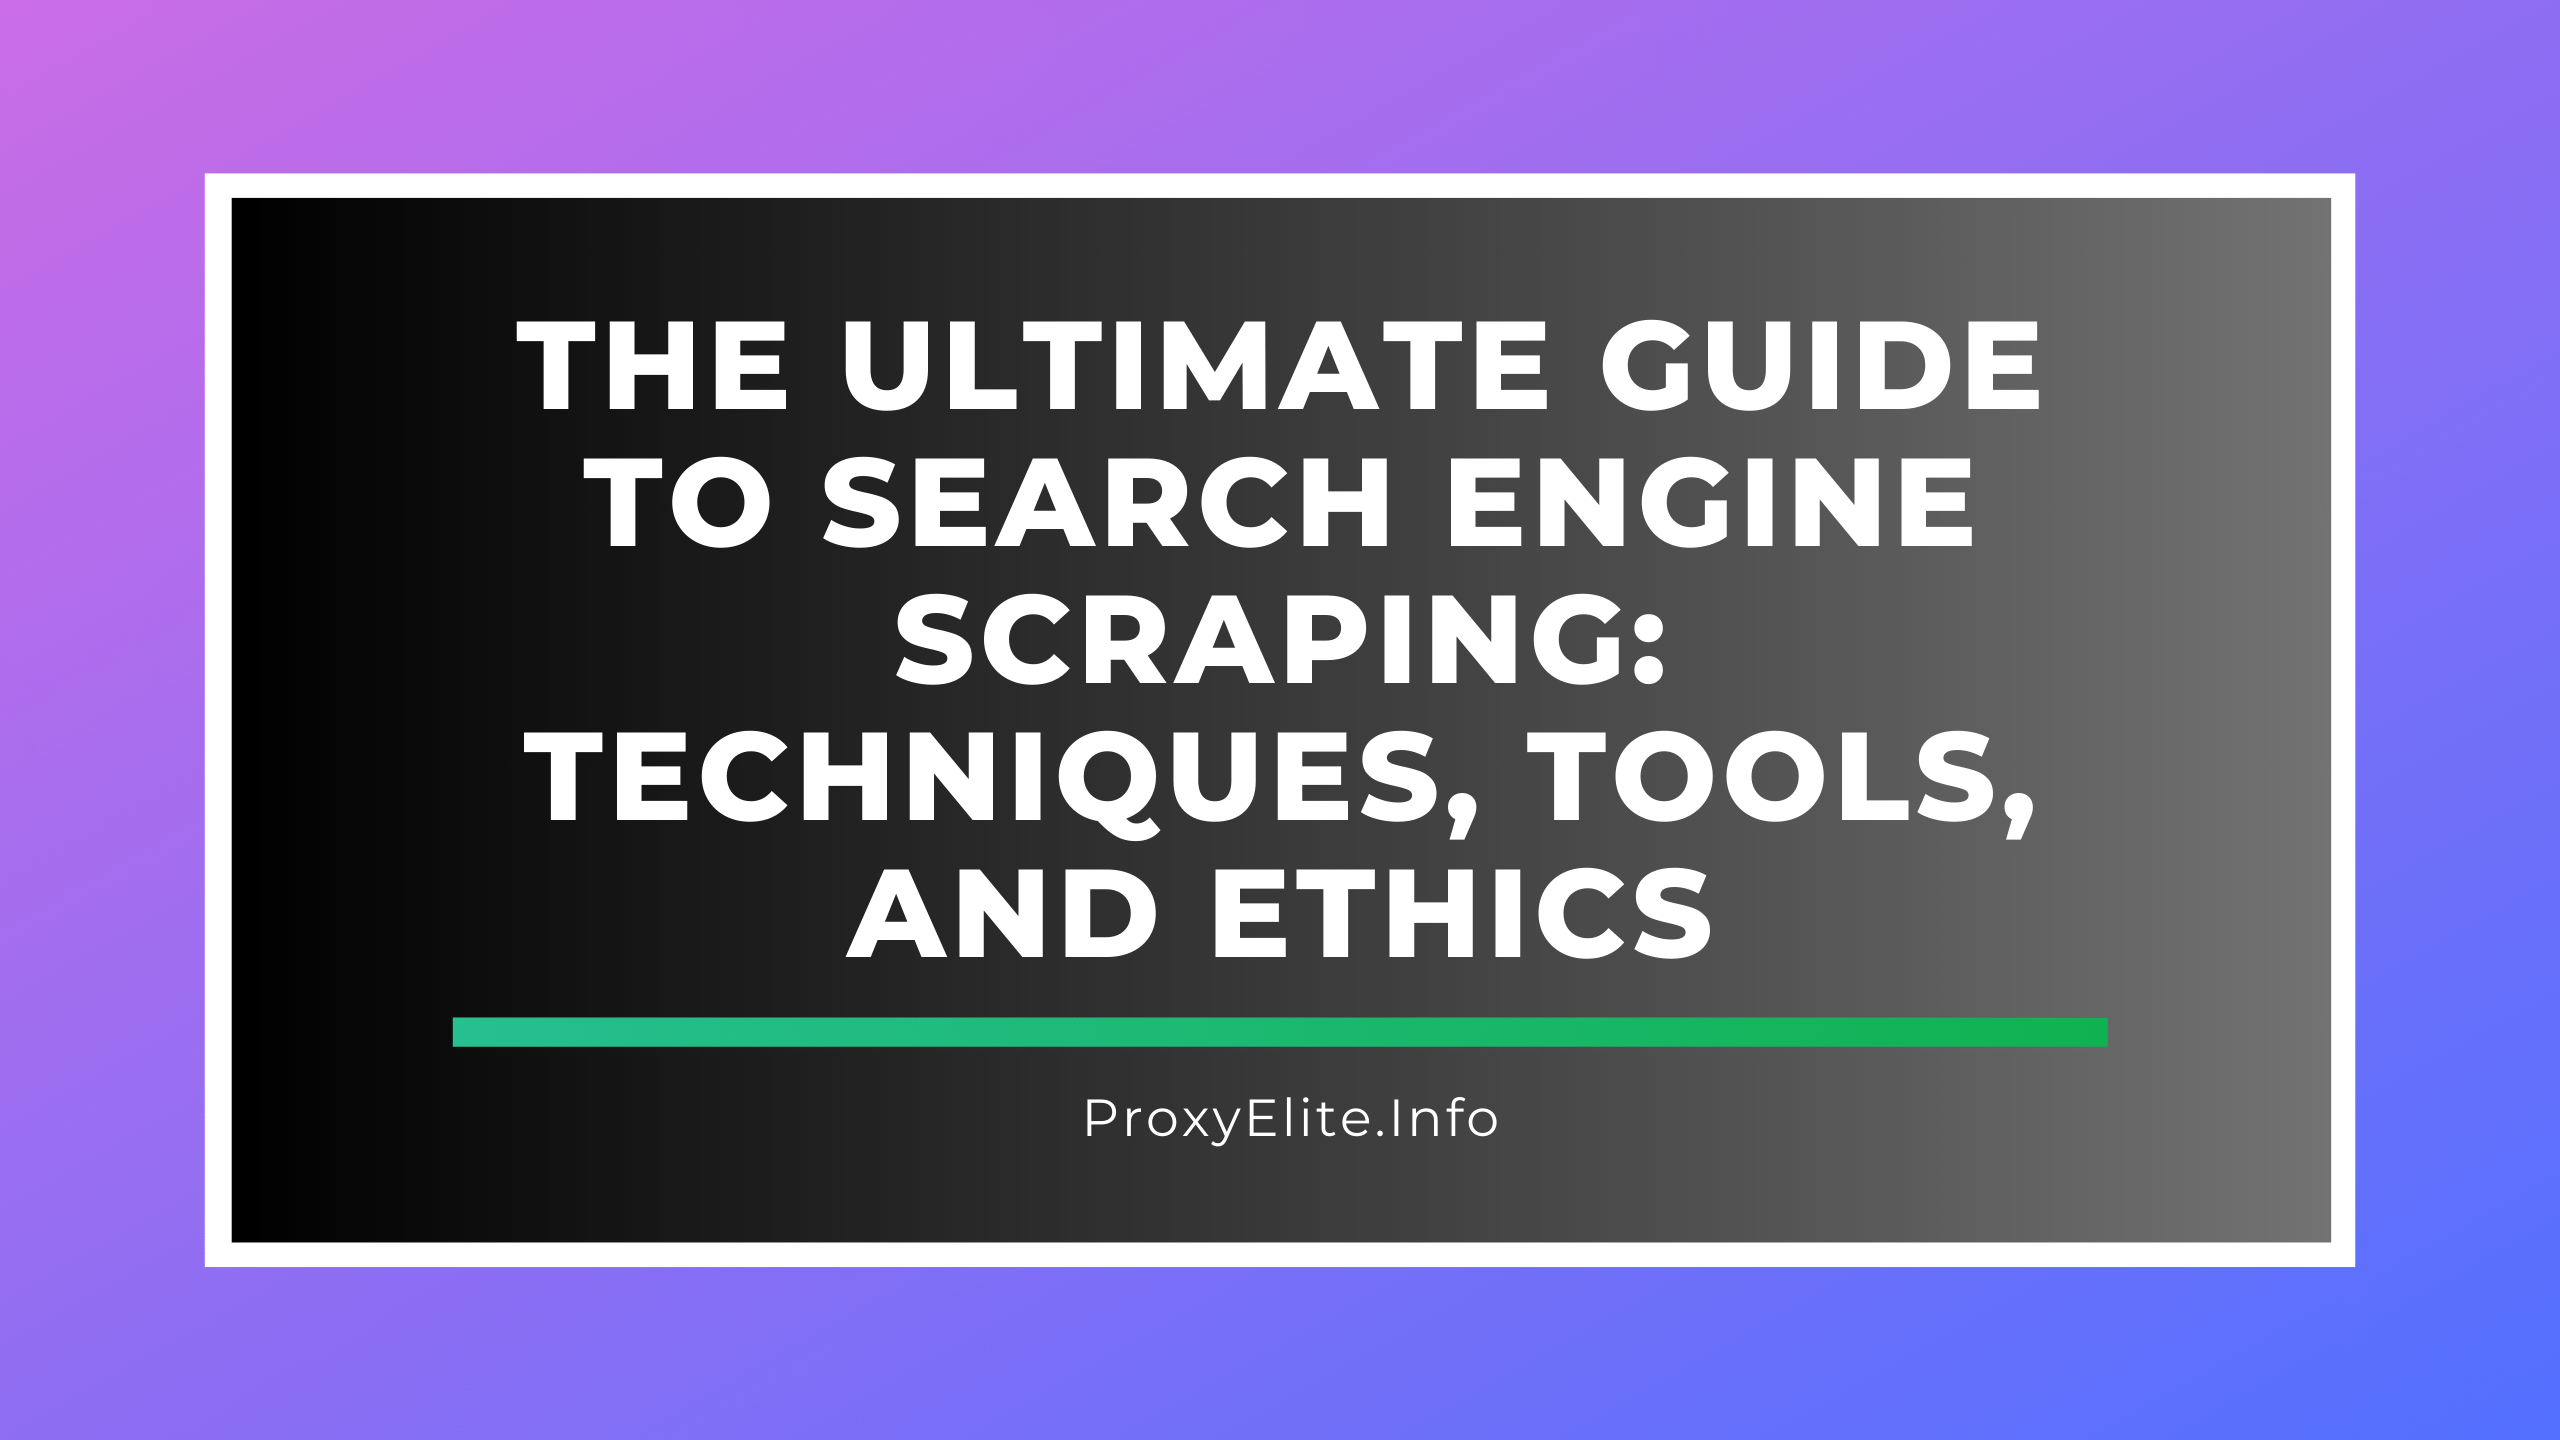 La guía definitiva para el scraping en motores de búsqueda: técnicas, herramientas y ética